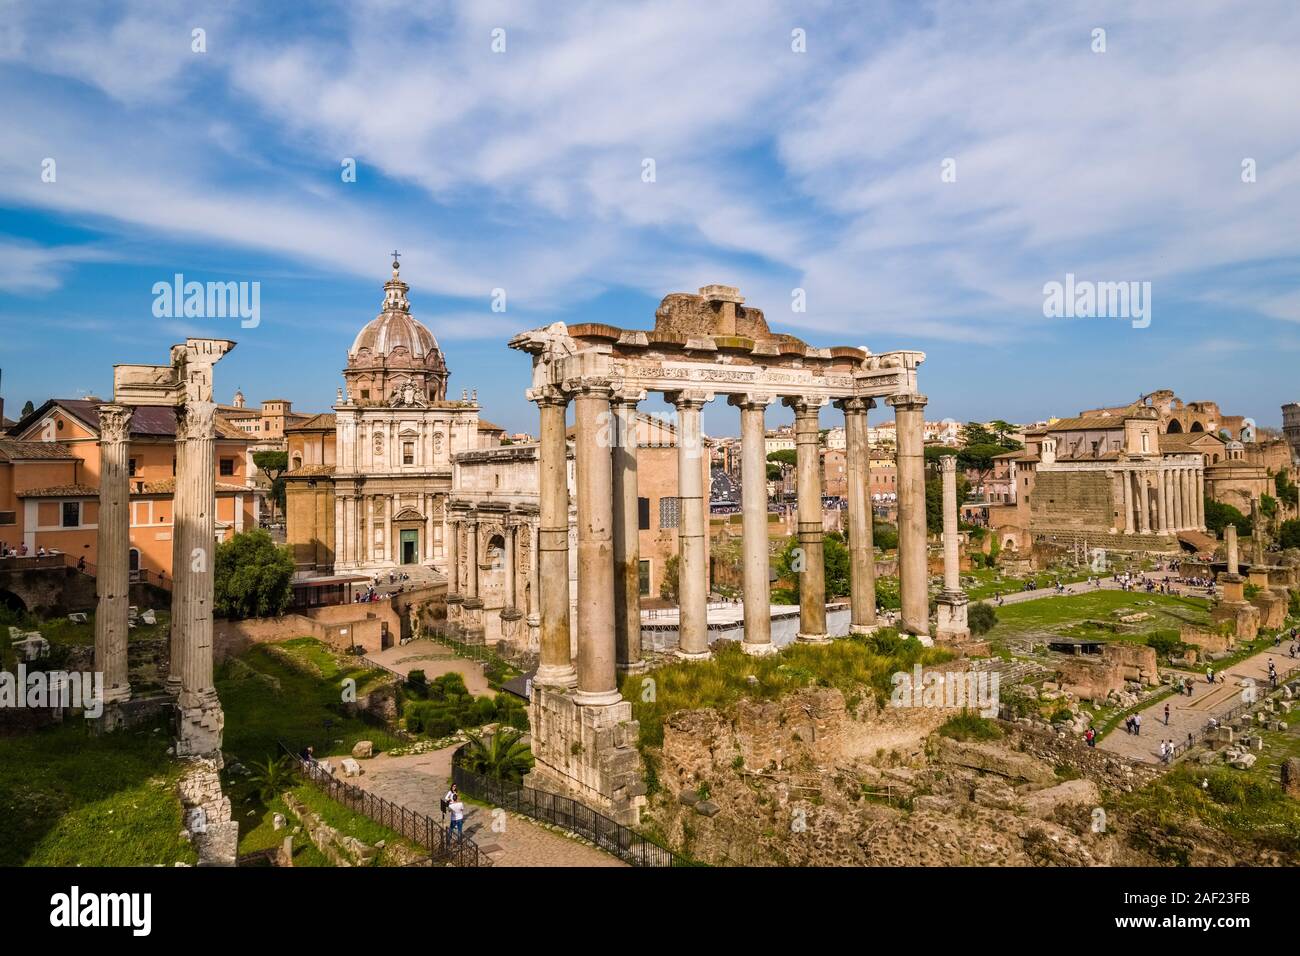 Blick auf das Forum Romanum, das Forum Romanum, die Ruinen von mehreren wichtigen alten Regierungsgebäude Stockfoto